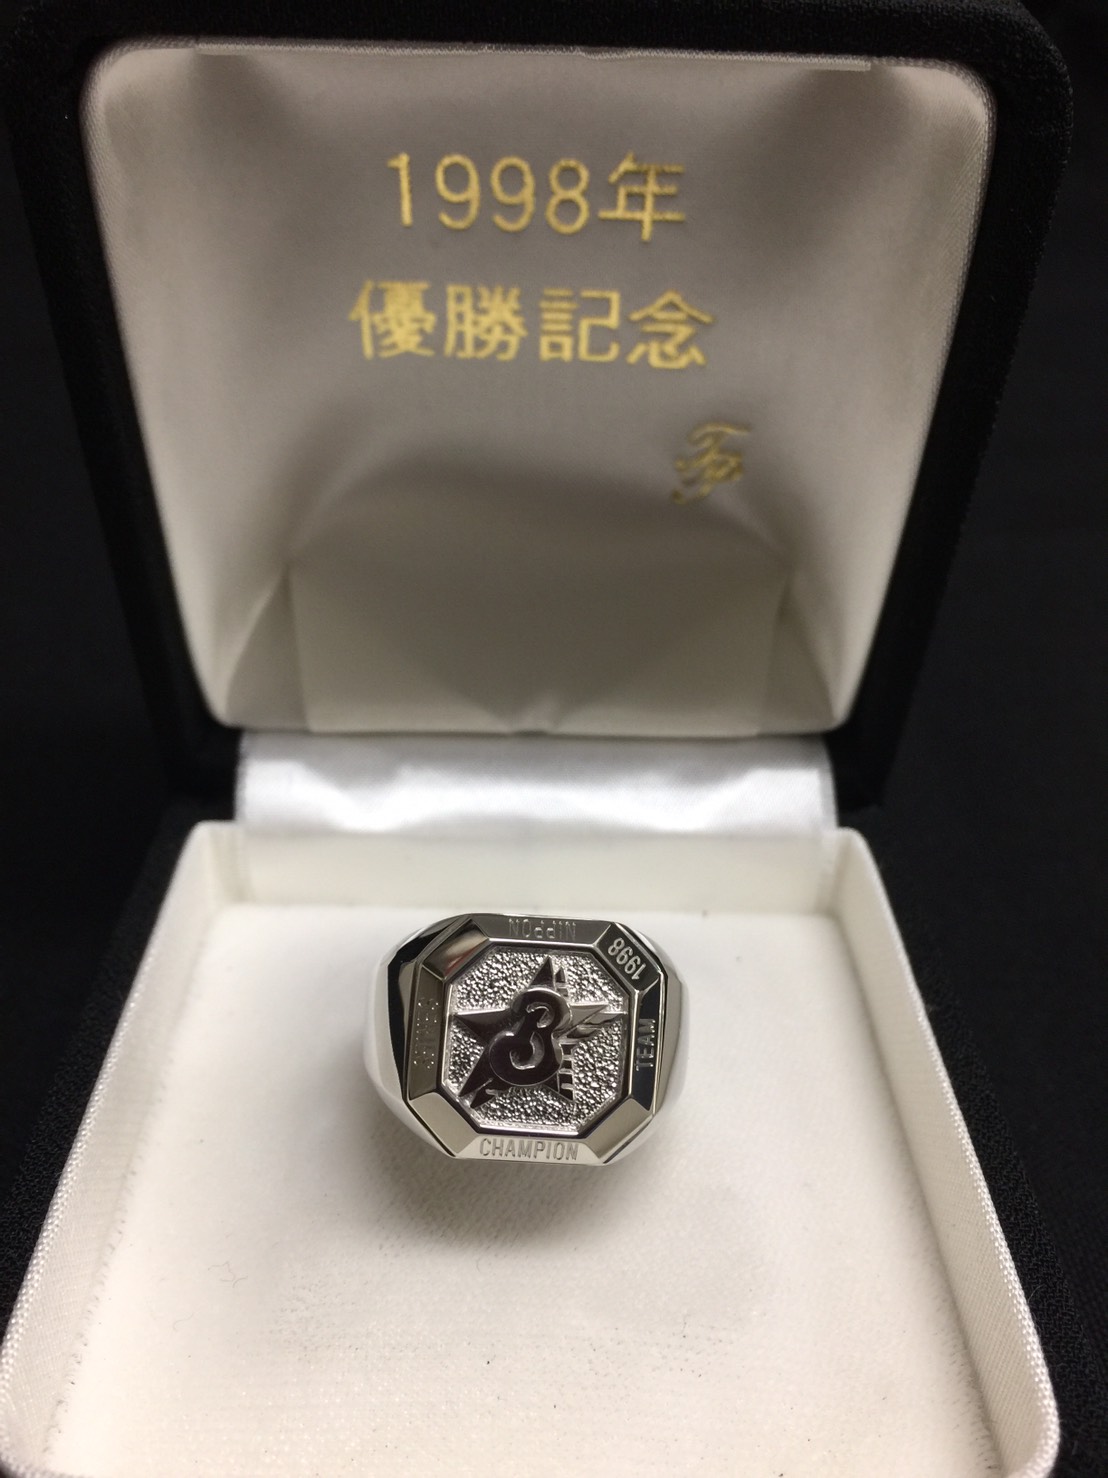 横浜ベイスターズ 1998年 優勝記念 チャンピオンズリング 56pt900 刻印有 約27.16g 本物保証